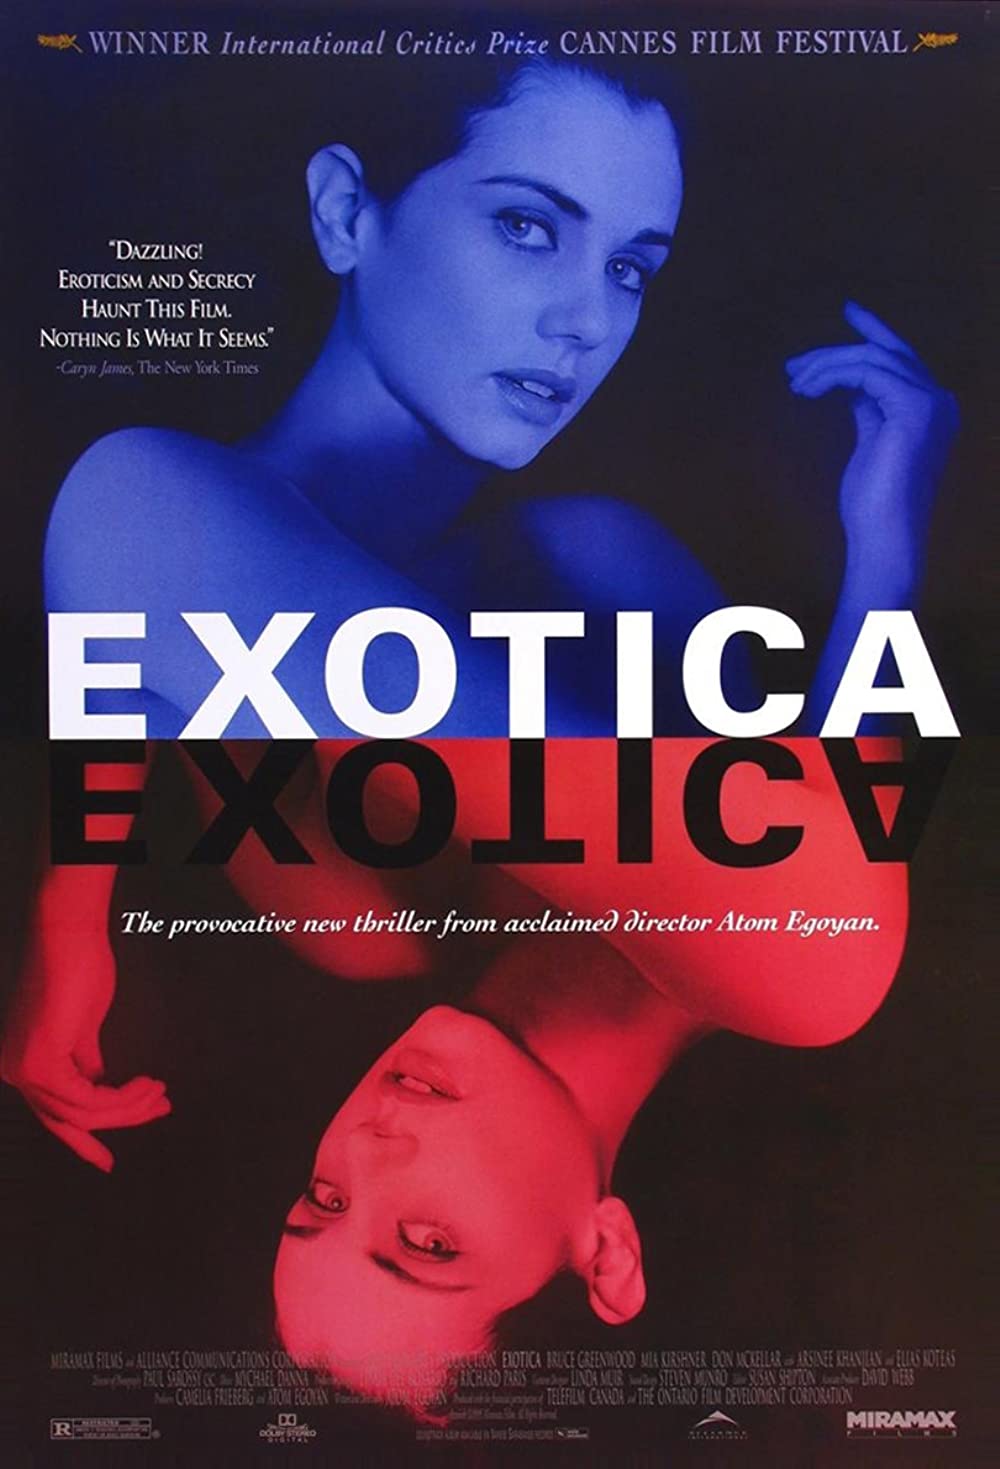 Filmbeschreibung zu Exotica (OV)